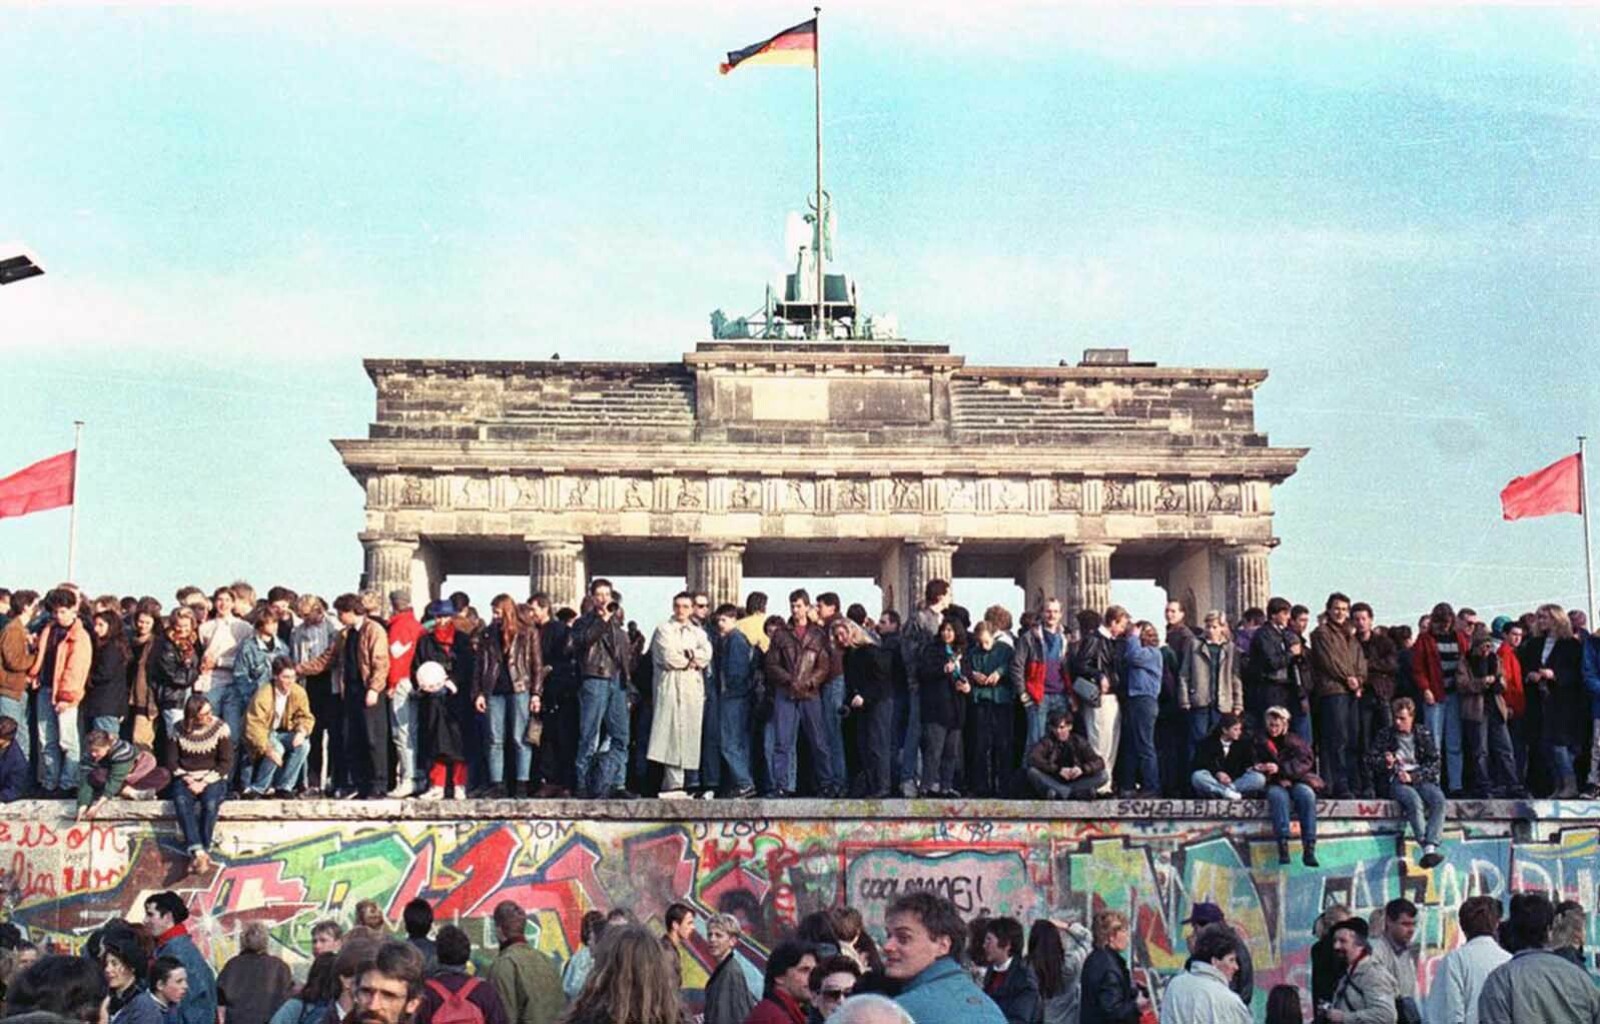 <b>DA MUREN FALT:</b> Det ble vill jubel da Berlinmuren falt for snaut 30 år siden og ingen trengte å risikere livet for å komme over den lenger. 